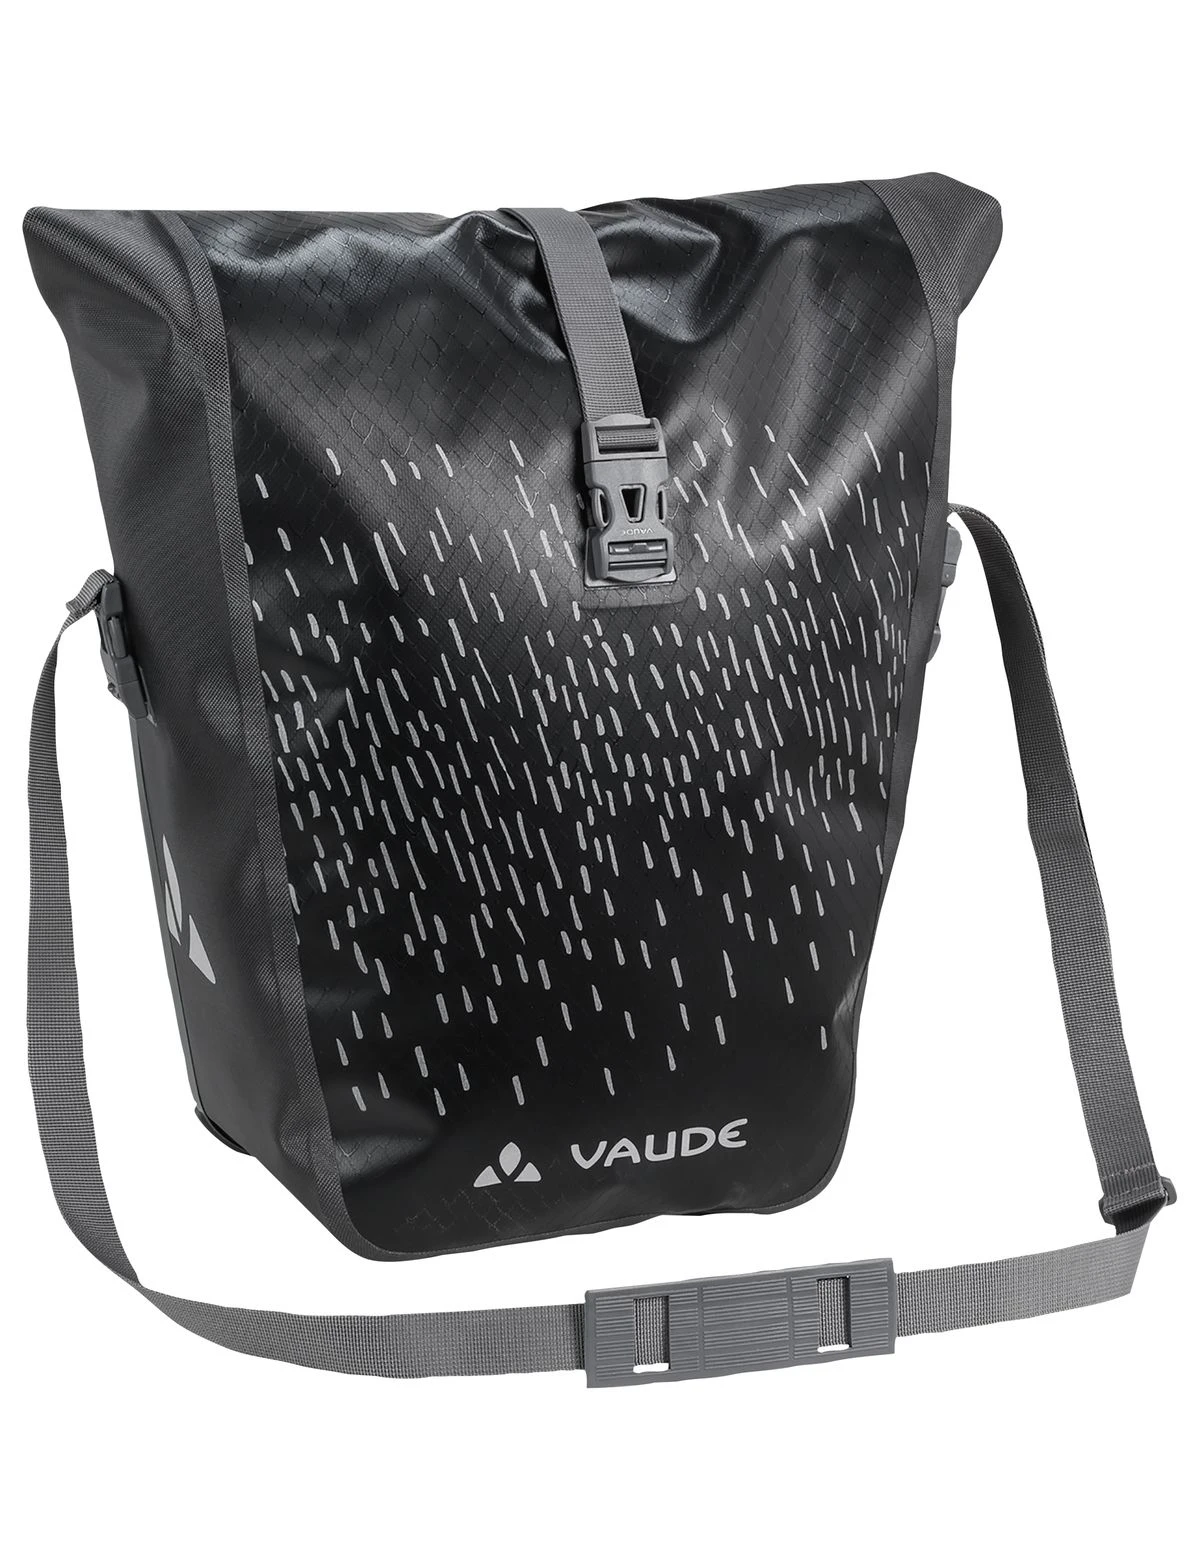 Vaude - Tasche Aqua Back Luminum Single, black